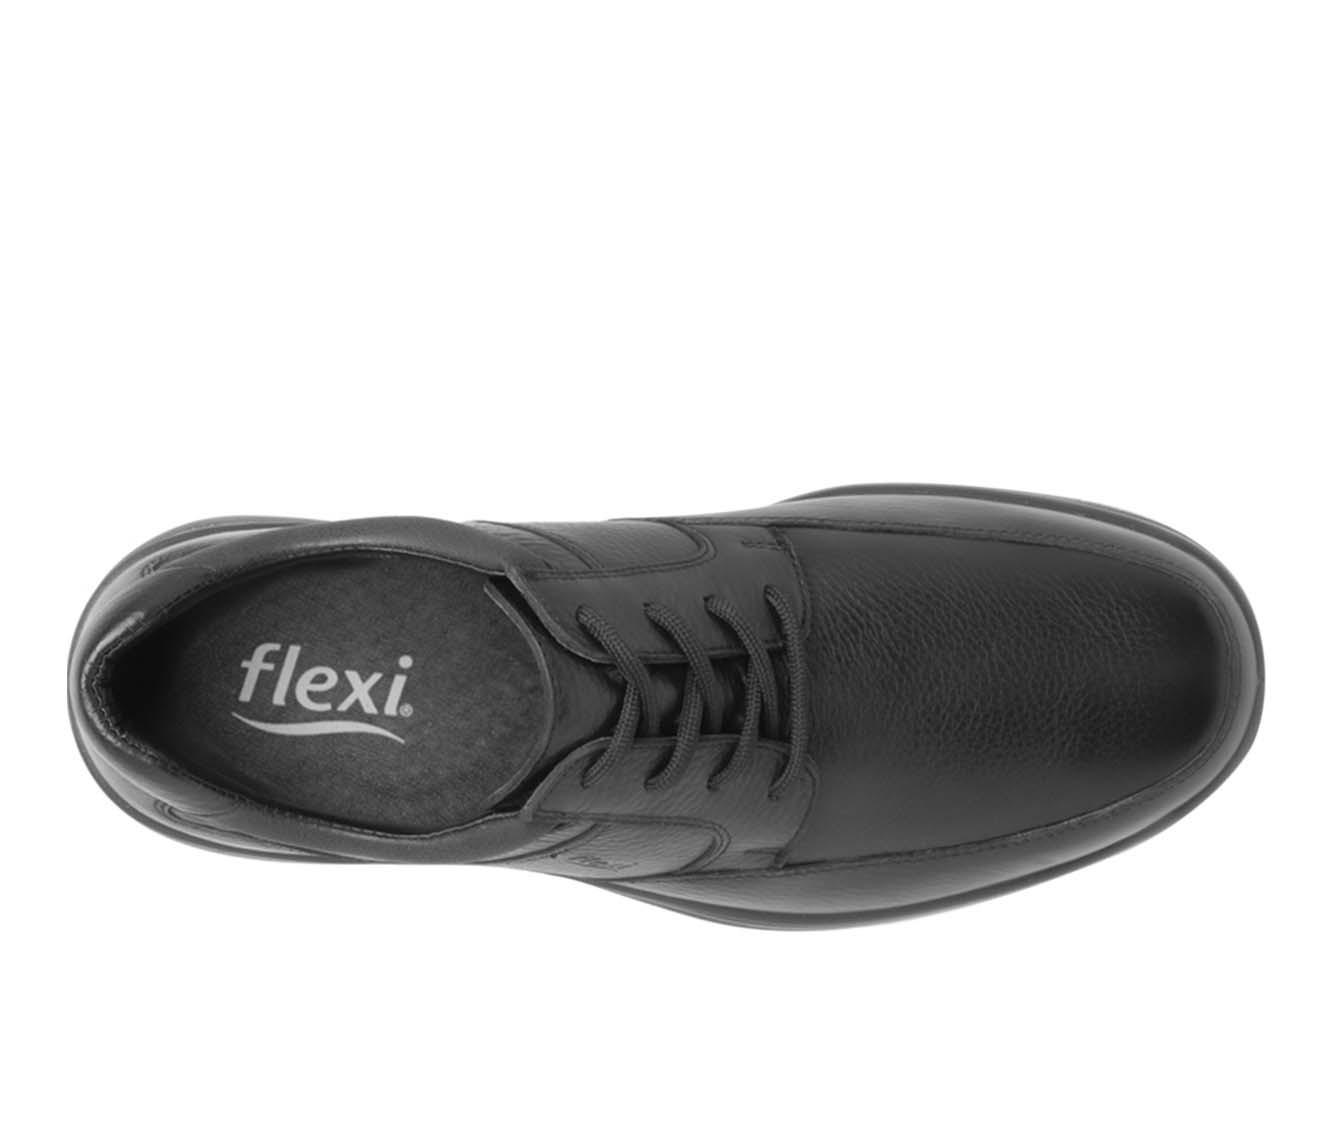 Men's Flexi Shoes Yacht Oxfords